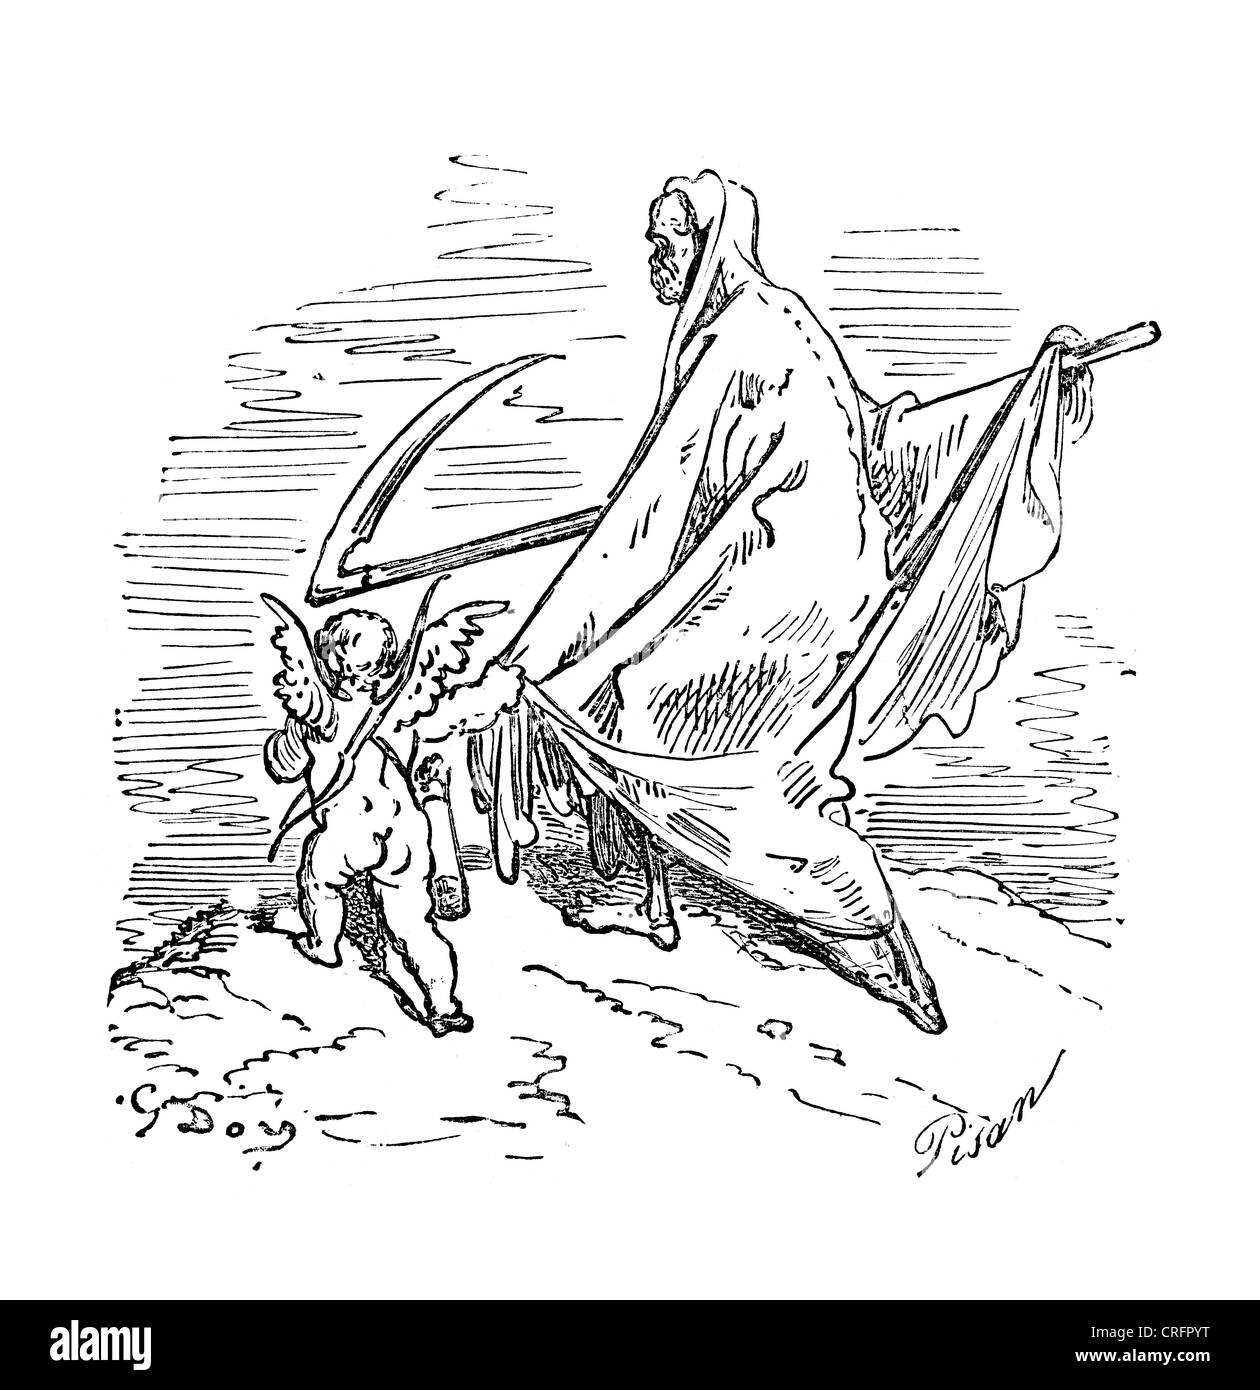 Amor und der Sensenmann. Illustration von Gustave Dore von Don Quijote. Stockfoto